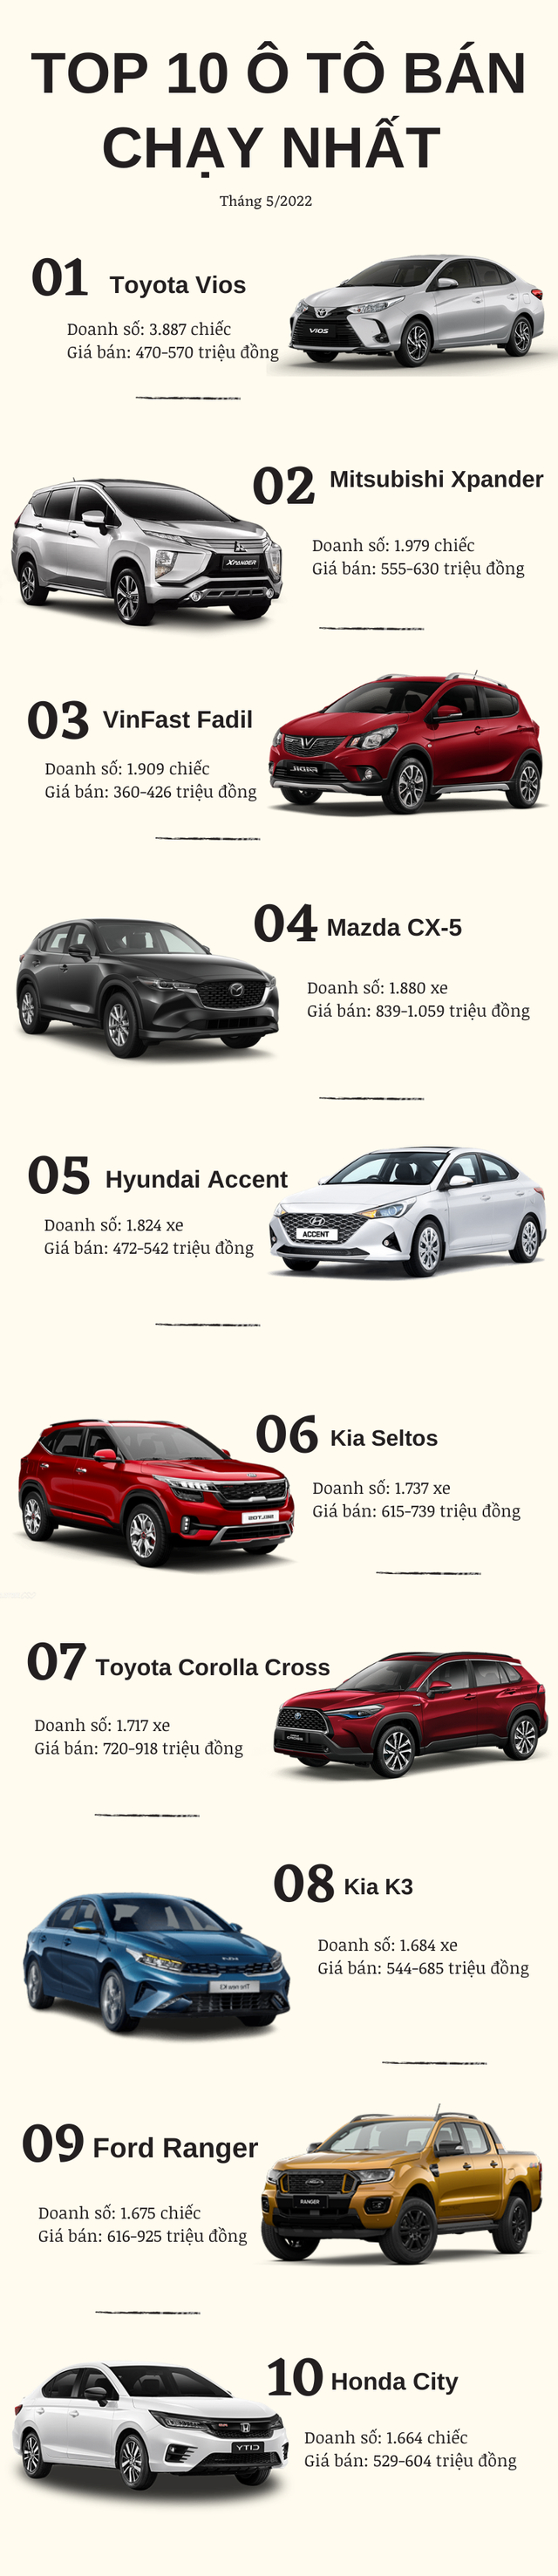 Top 10 ô tô bán chạy nhất tháng 5/2022: Toyota Vios, Mitsubishi Xpander, VinFast Fadil bứt phá ngoạn mục, Honda CR-V “mất hút” khỏi bảng xếp hạng - Ảnh 1.